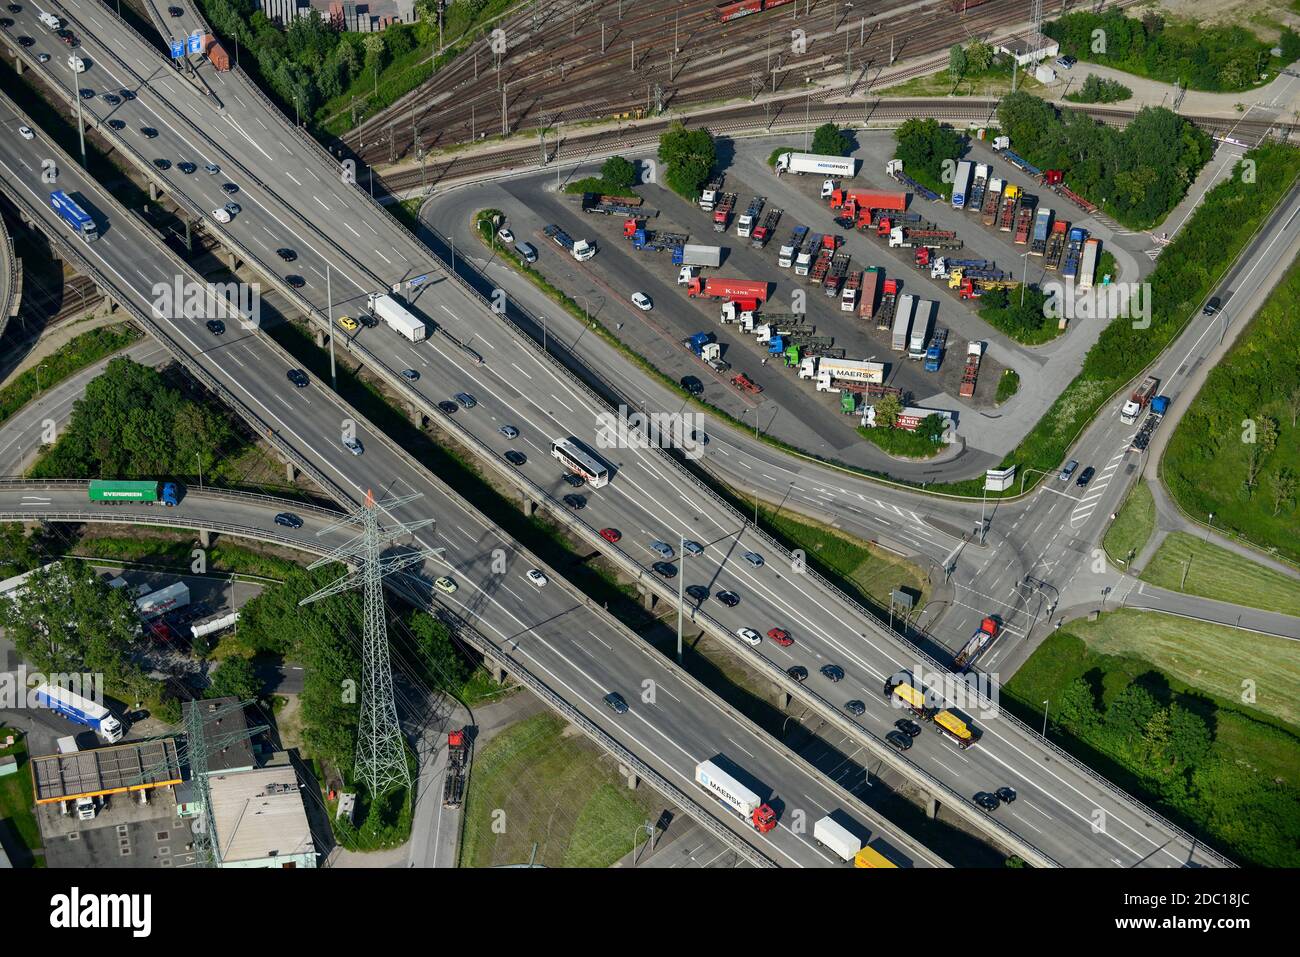 Germania, Amburgo, parcheggio per camion e traffico su Autobahn / DEUTSCHLAND, Amburgo, Autobahn A7 und Autohof mit Lastwagen bei Waltershof Foto Stock